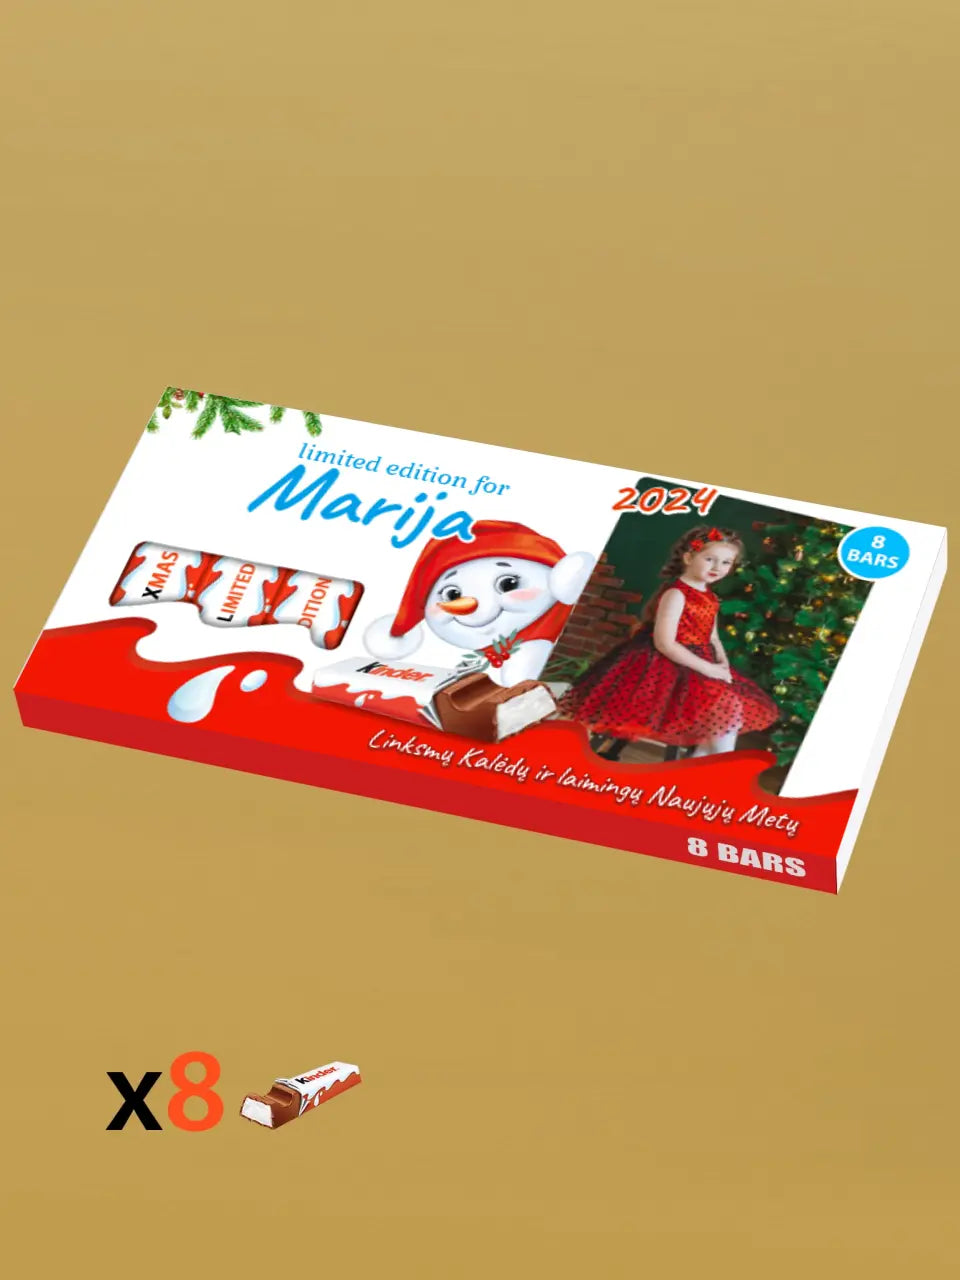 Personalizuota Kinder 8 batonėlių šokoladinė dėžutė su jūsų nuotrauka, Kalėdinė versija su sniego seneliu